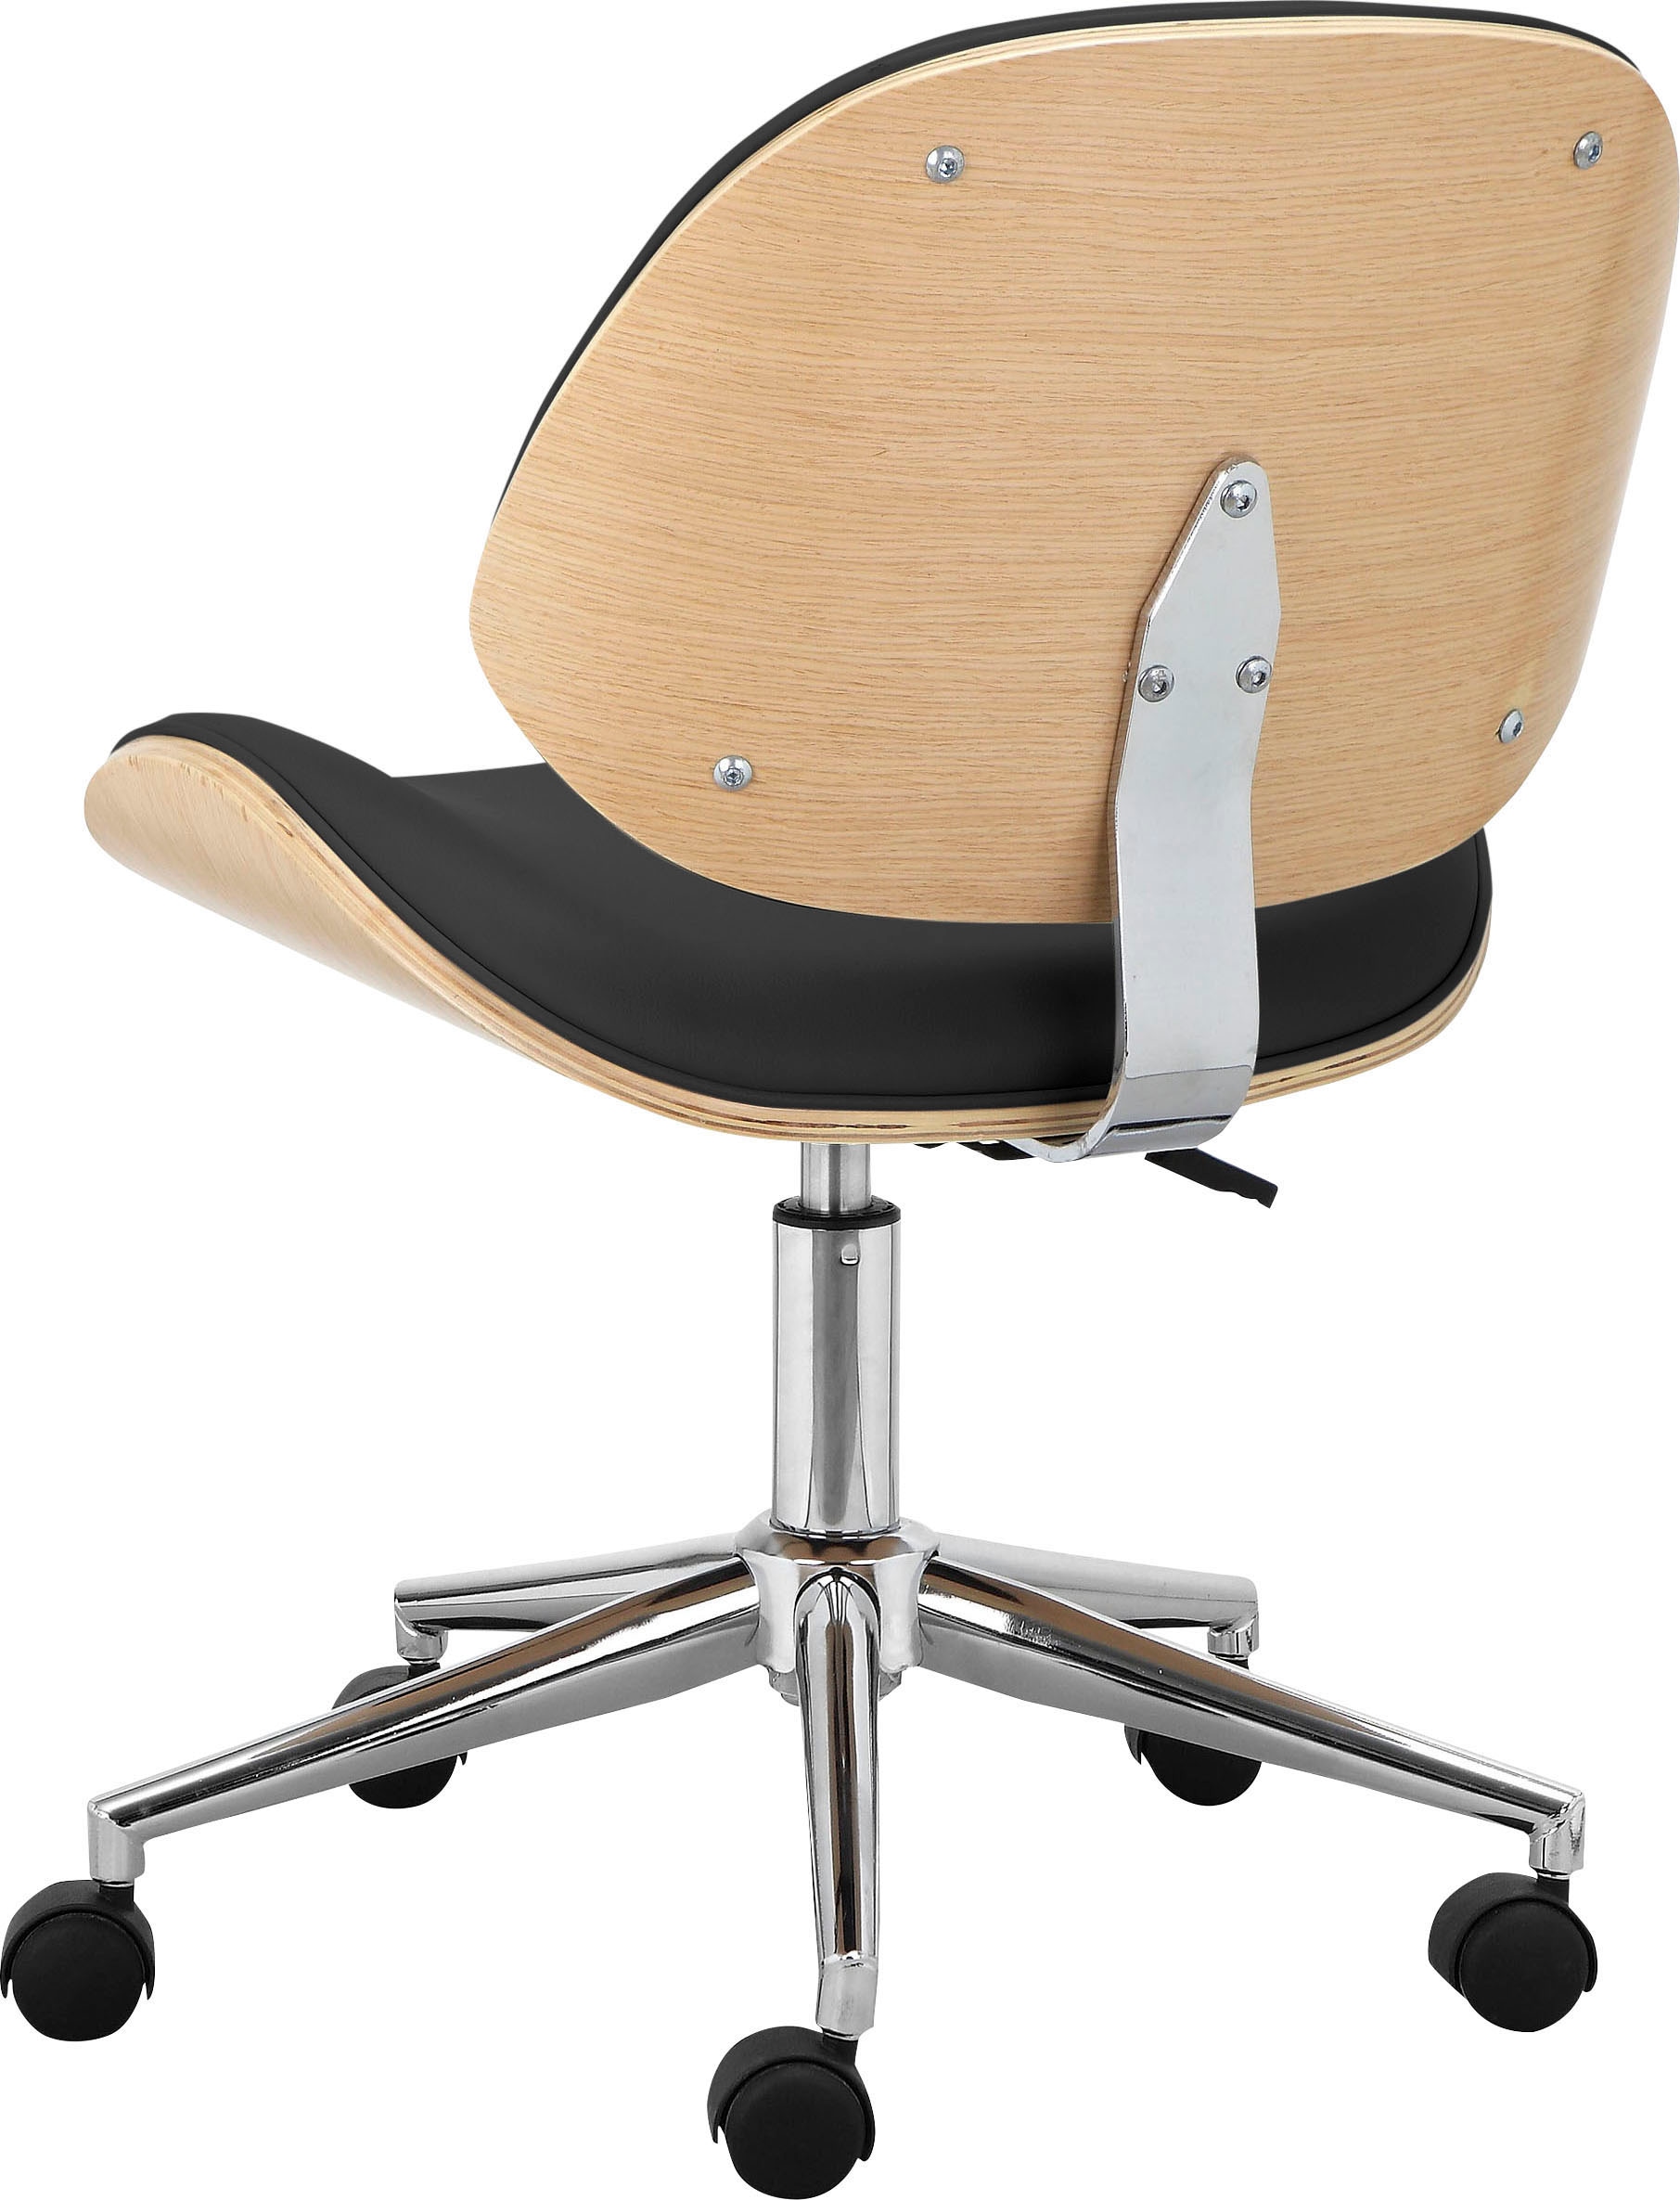 andas Bürostuhl »Kiruna«,  höhenverstellbar, 360° drehbar, Gestell aus Metall, in verschiedenen Farbvarianten erhältlich, Sitzhöhe 44-54 cm